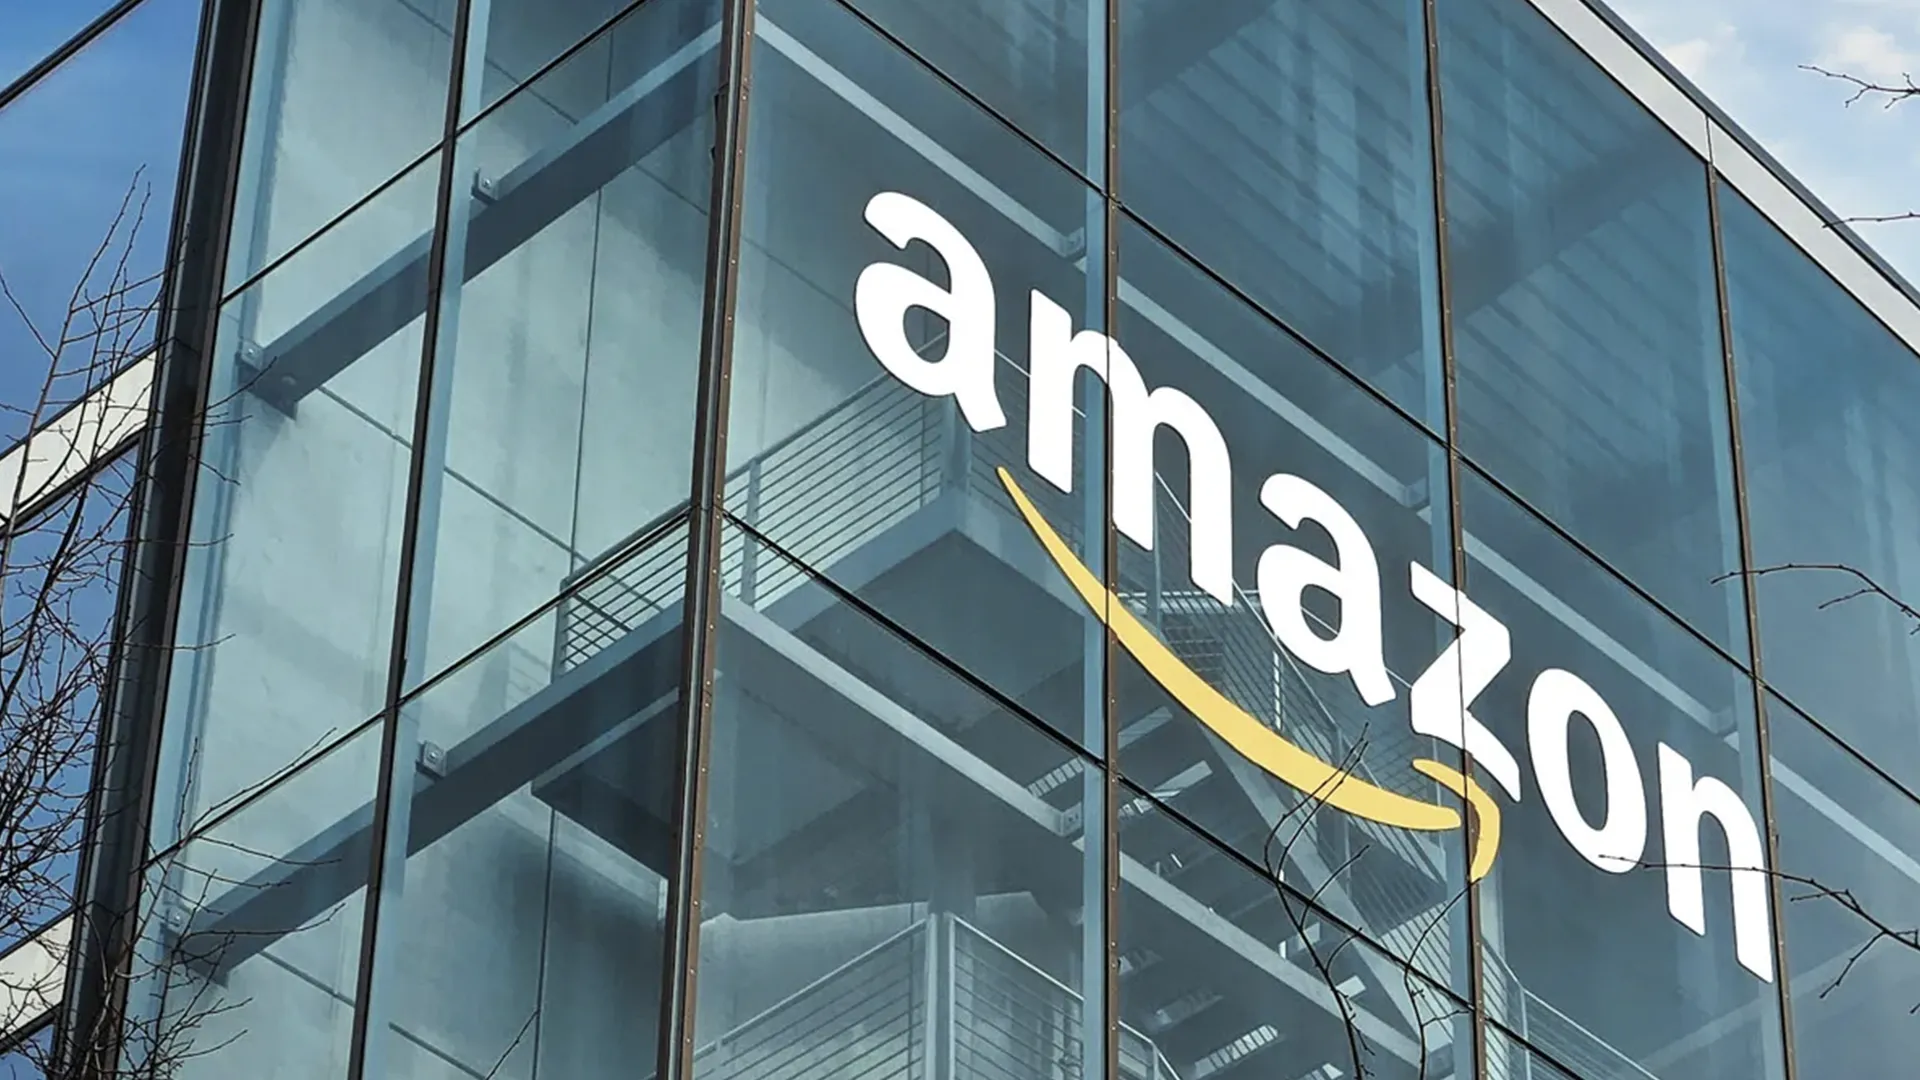 Vendas da Amazon ficam acima das expectativas com aumento da demanda por IA